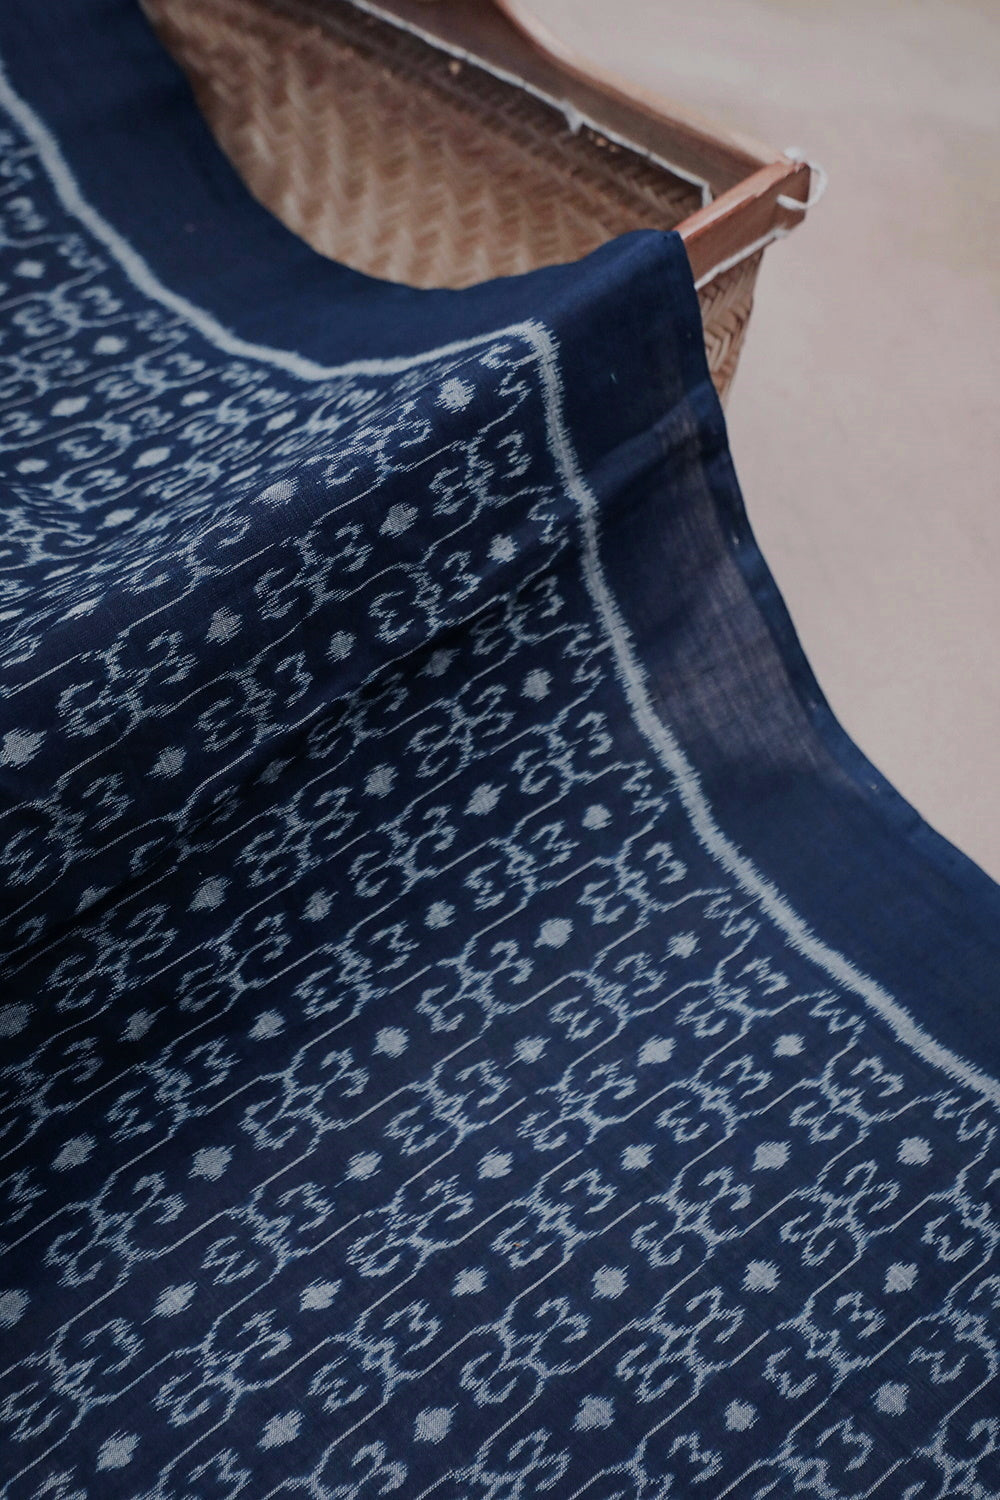 Patterned on Blue Orissa Ikat Cotton Fabric - 0.7m